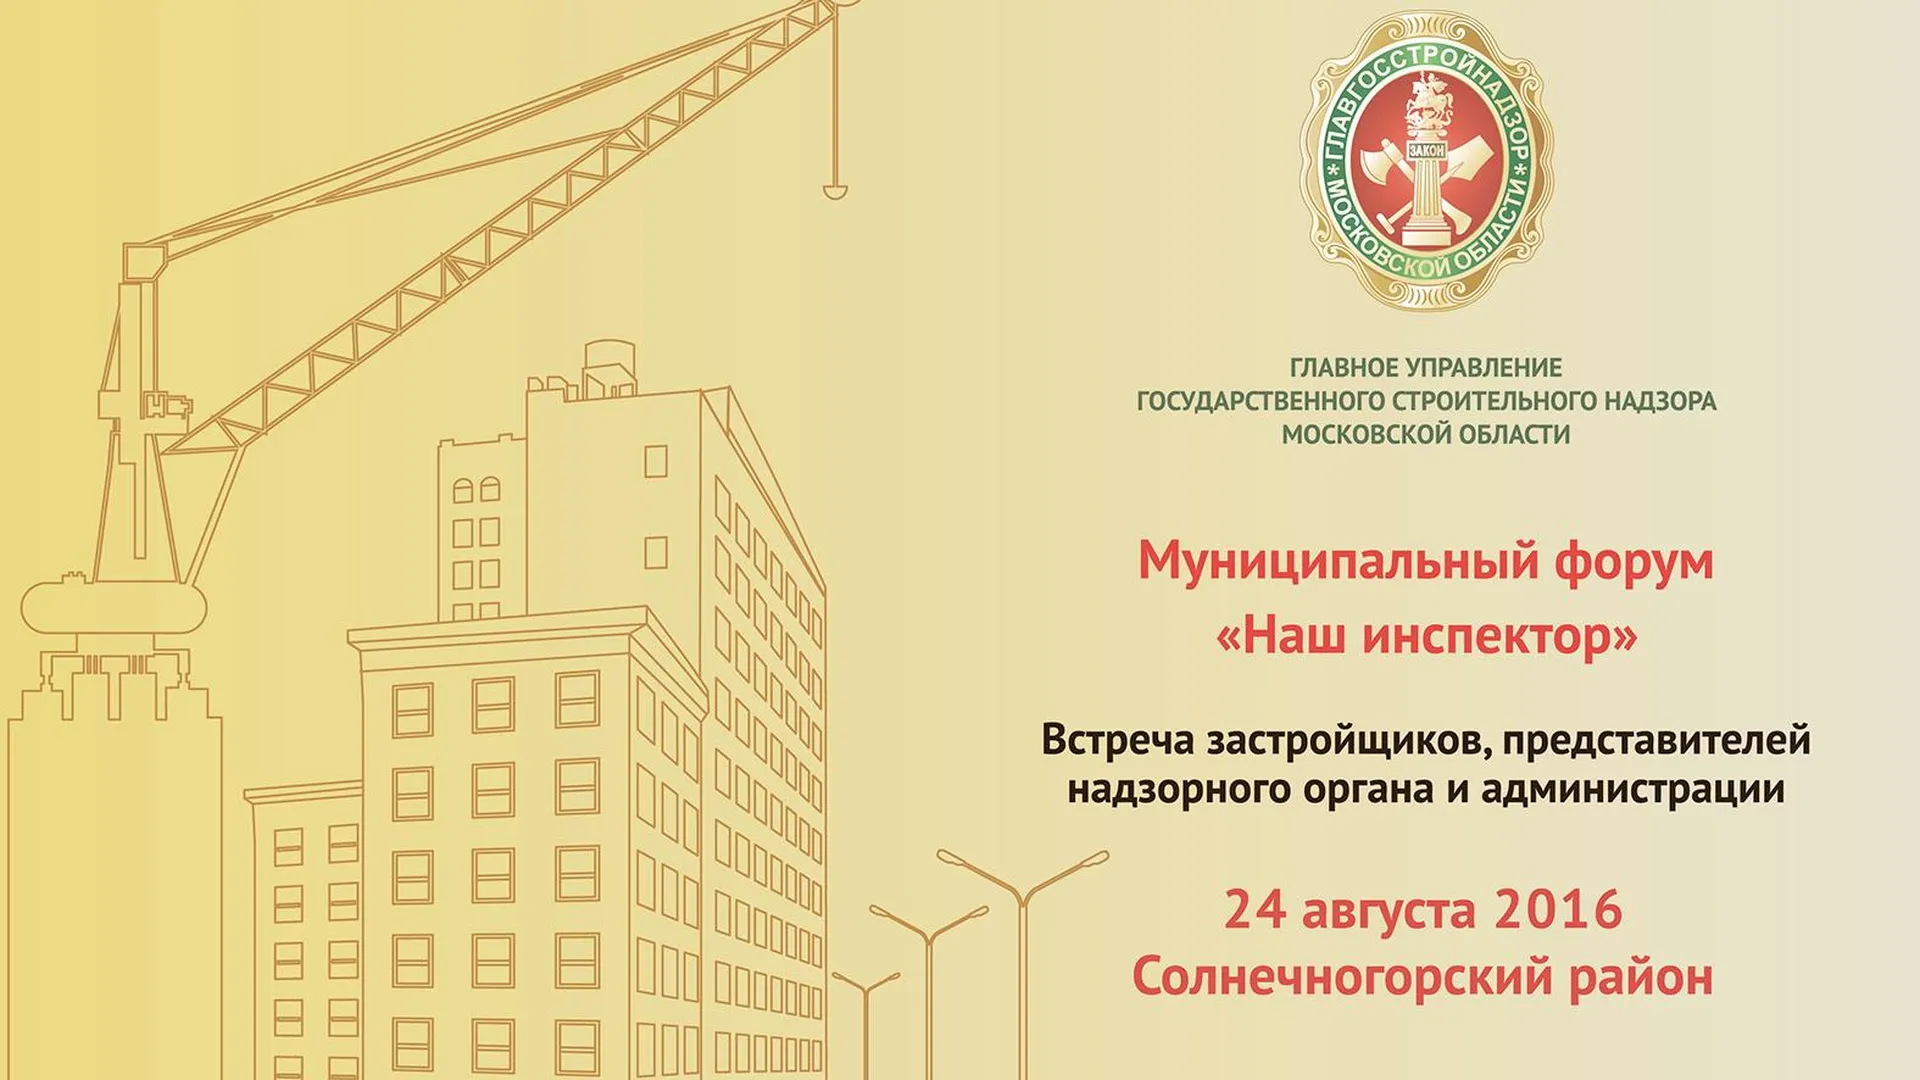 Форум «Наш инспектор» пройдет в Солнечногорском районе в среду